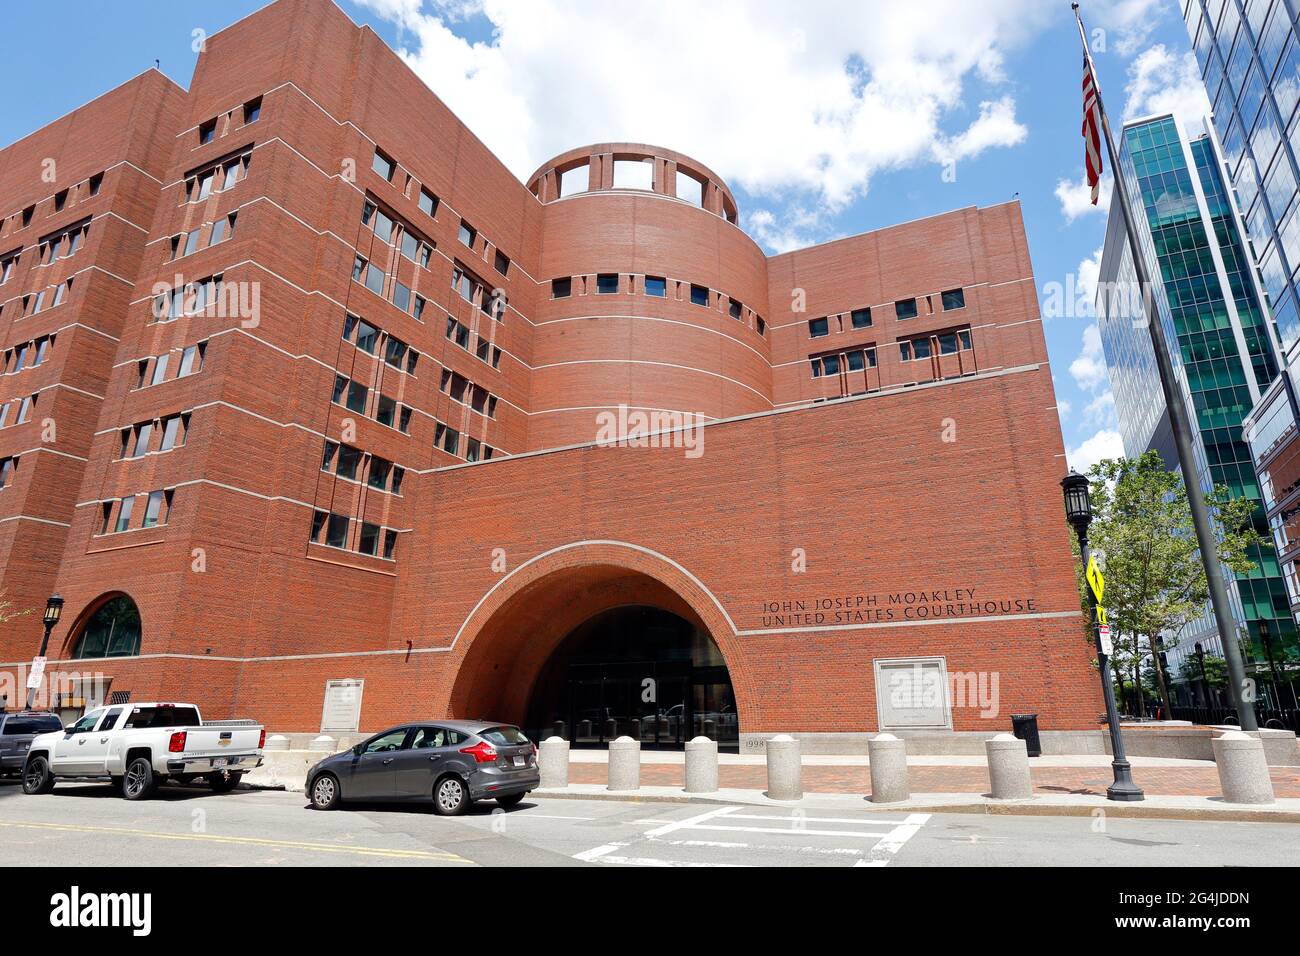 John Joseph Moakley United States Courthouse, 1 Courthouse Way, Boston, MA. Ein Bundesgericht im Seaport-Viertel. Stockfoto